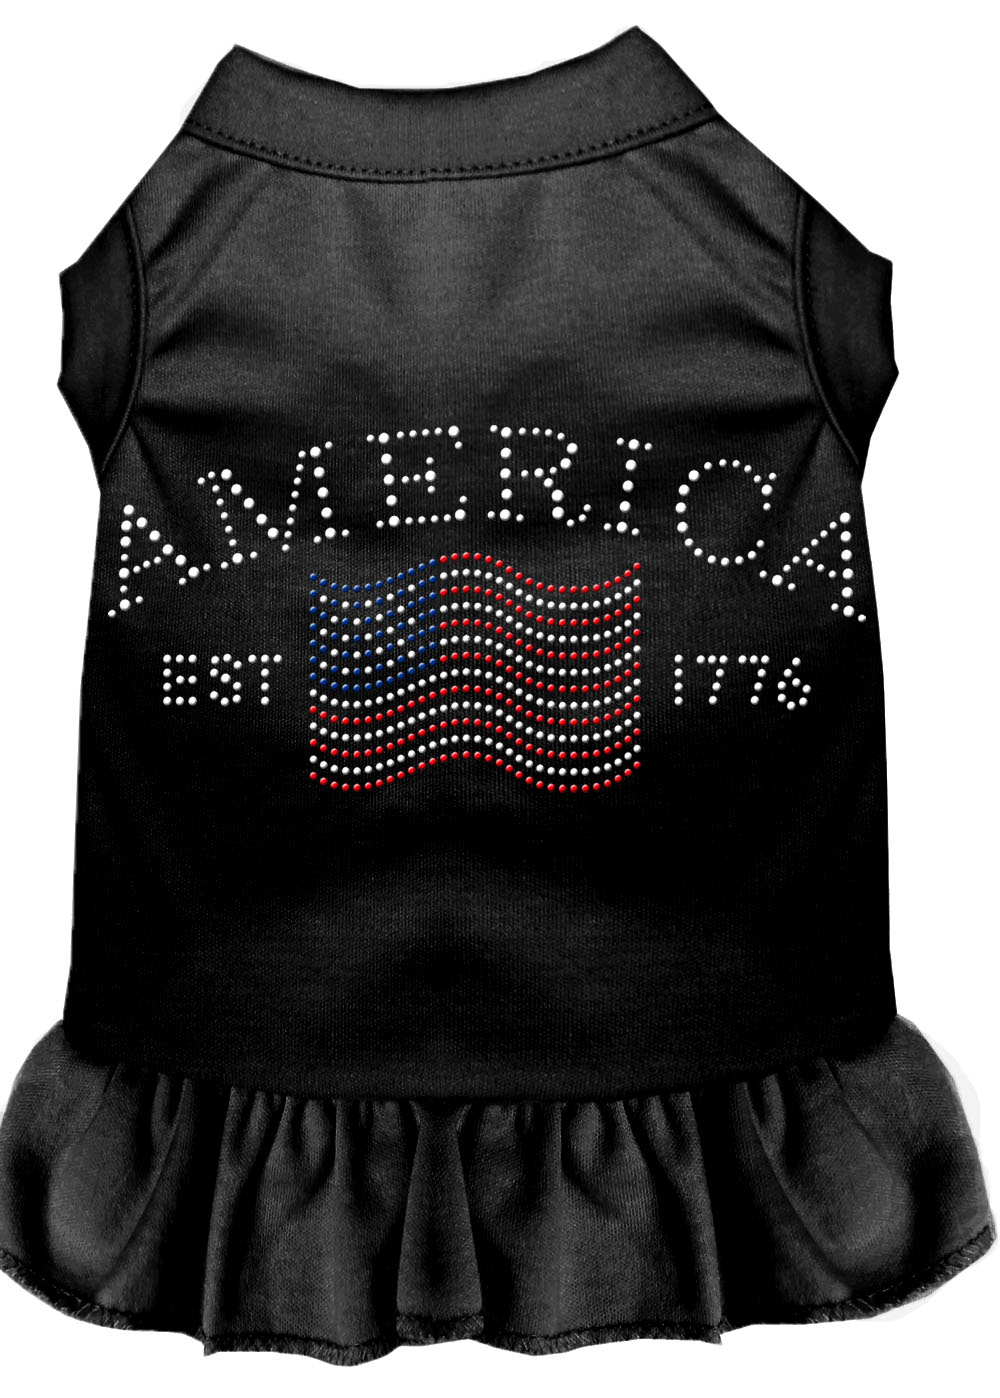 Classic America Rhinestone Dress Black XXXL